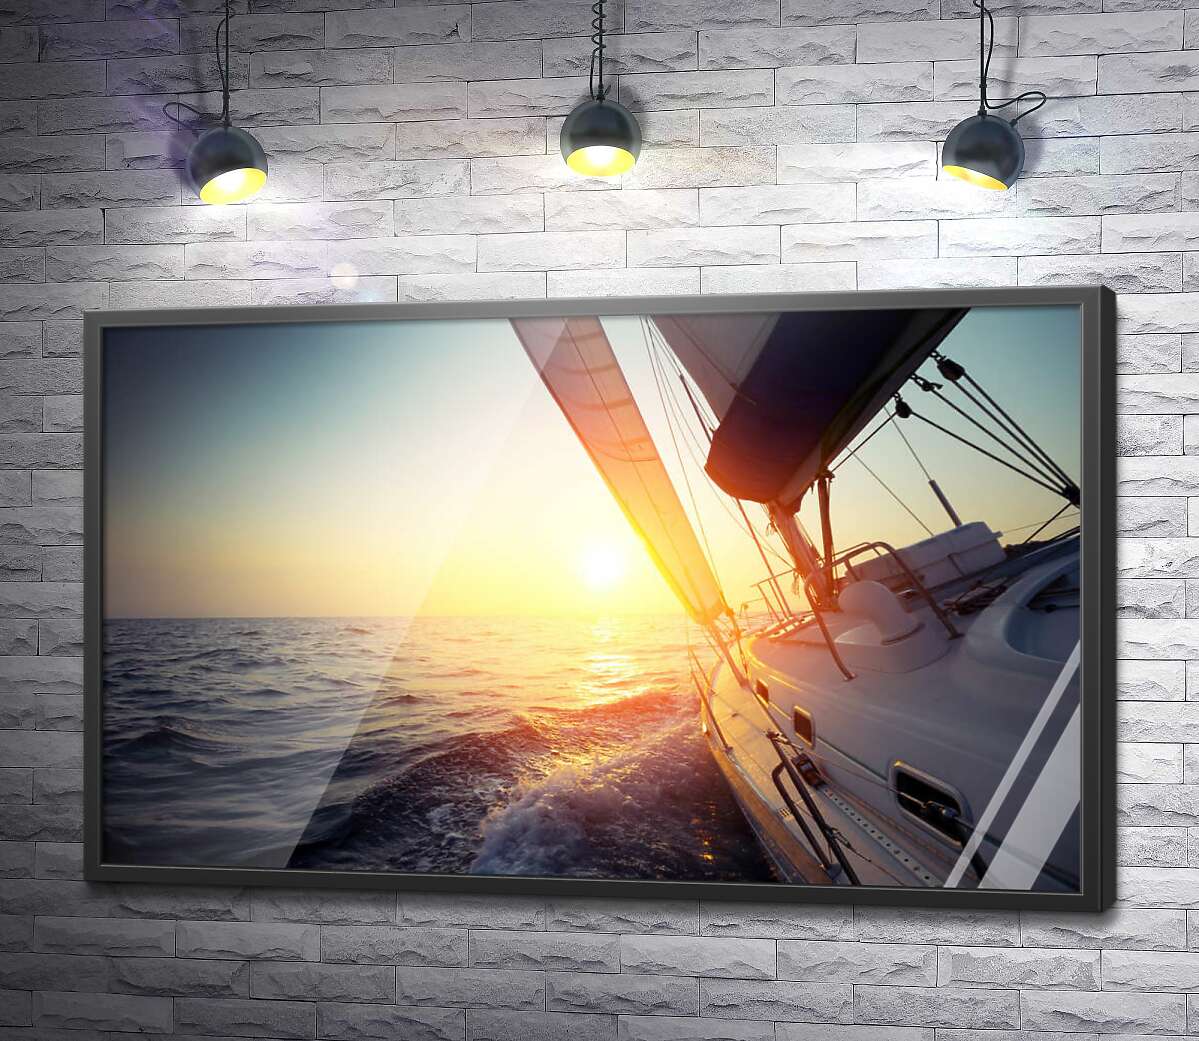 постер Яхта в море на закате солнца